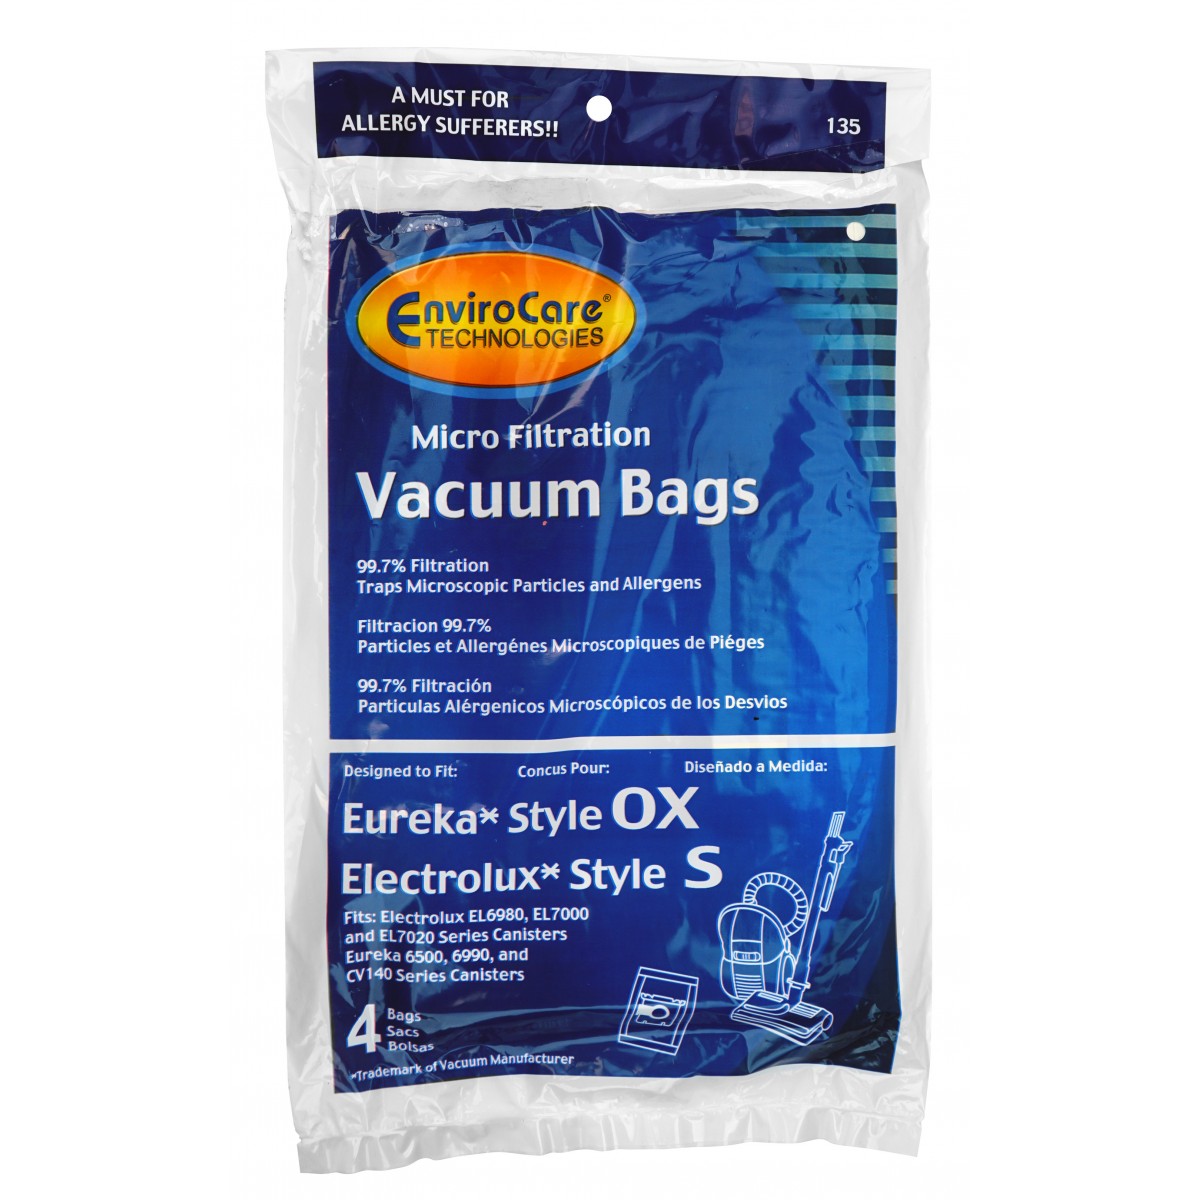 Sac microfiltre pour aspirateur Electrolux style S, Eureka style OX -  Harmony - Oxygen - paquet de 4 sacs 